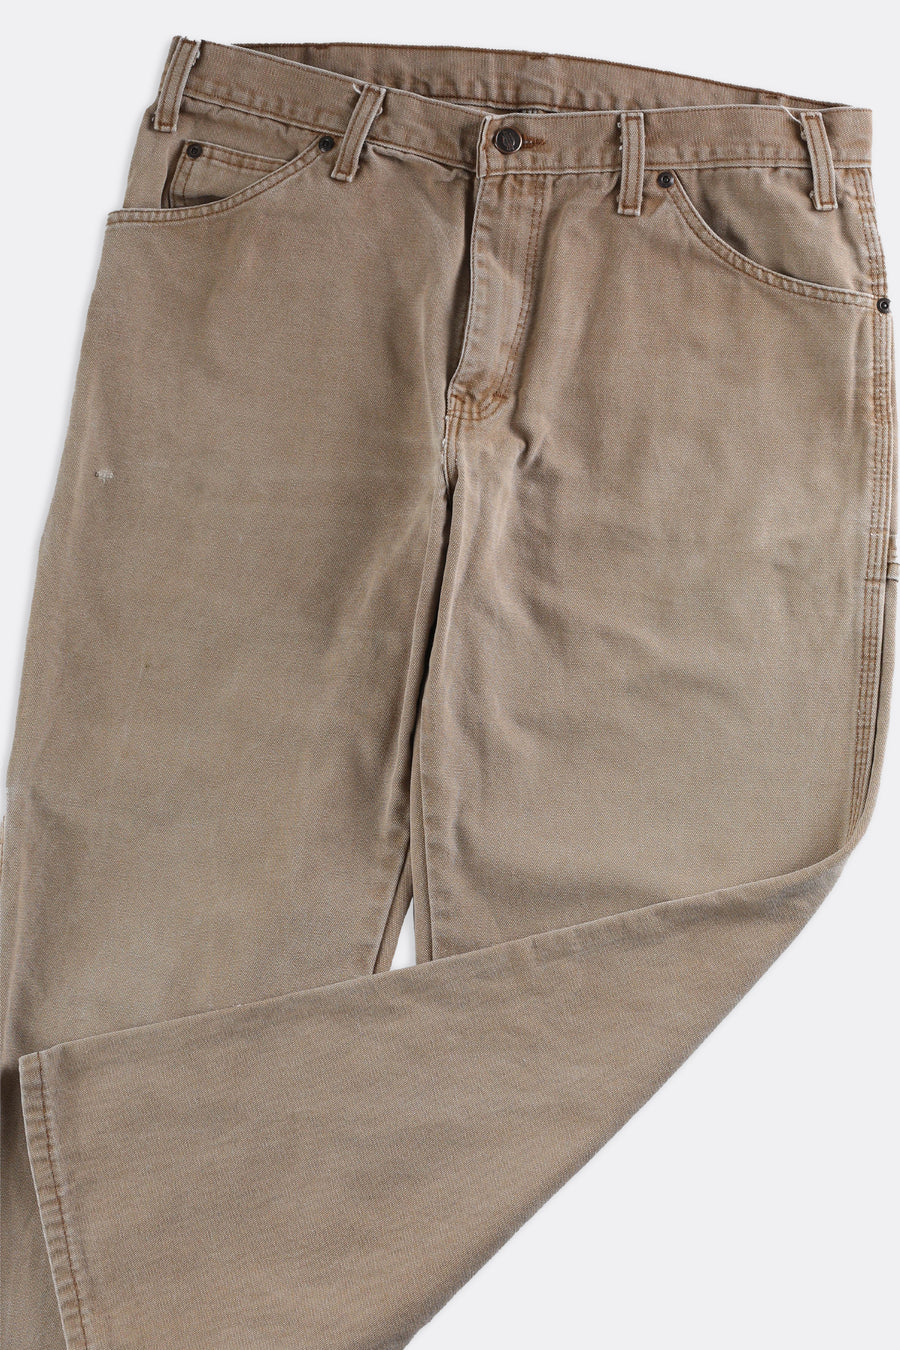 Vintage Dickies Work Pants